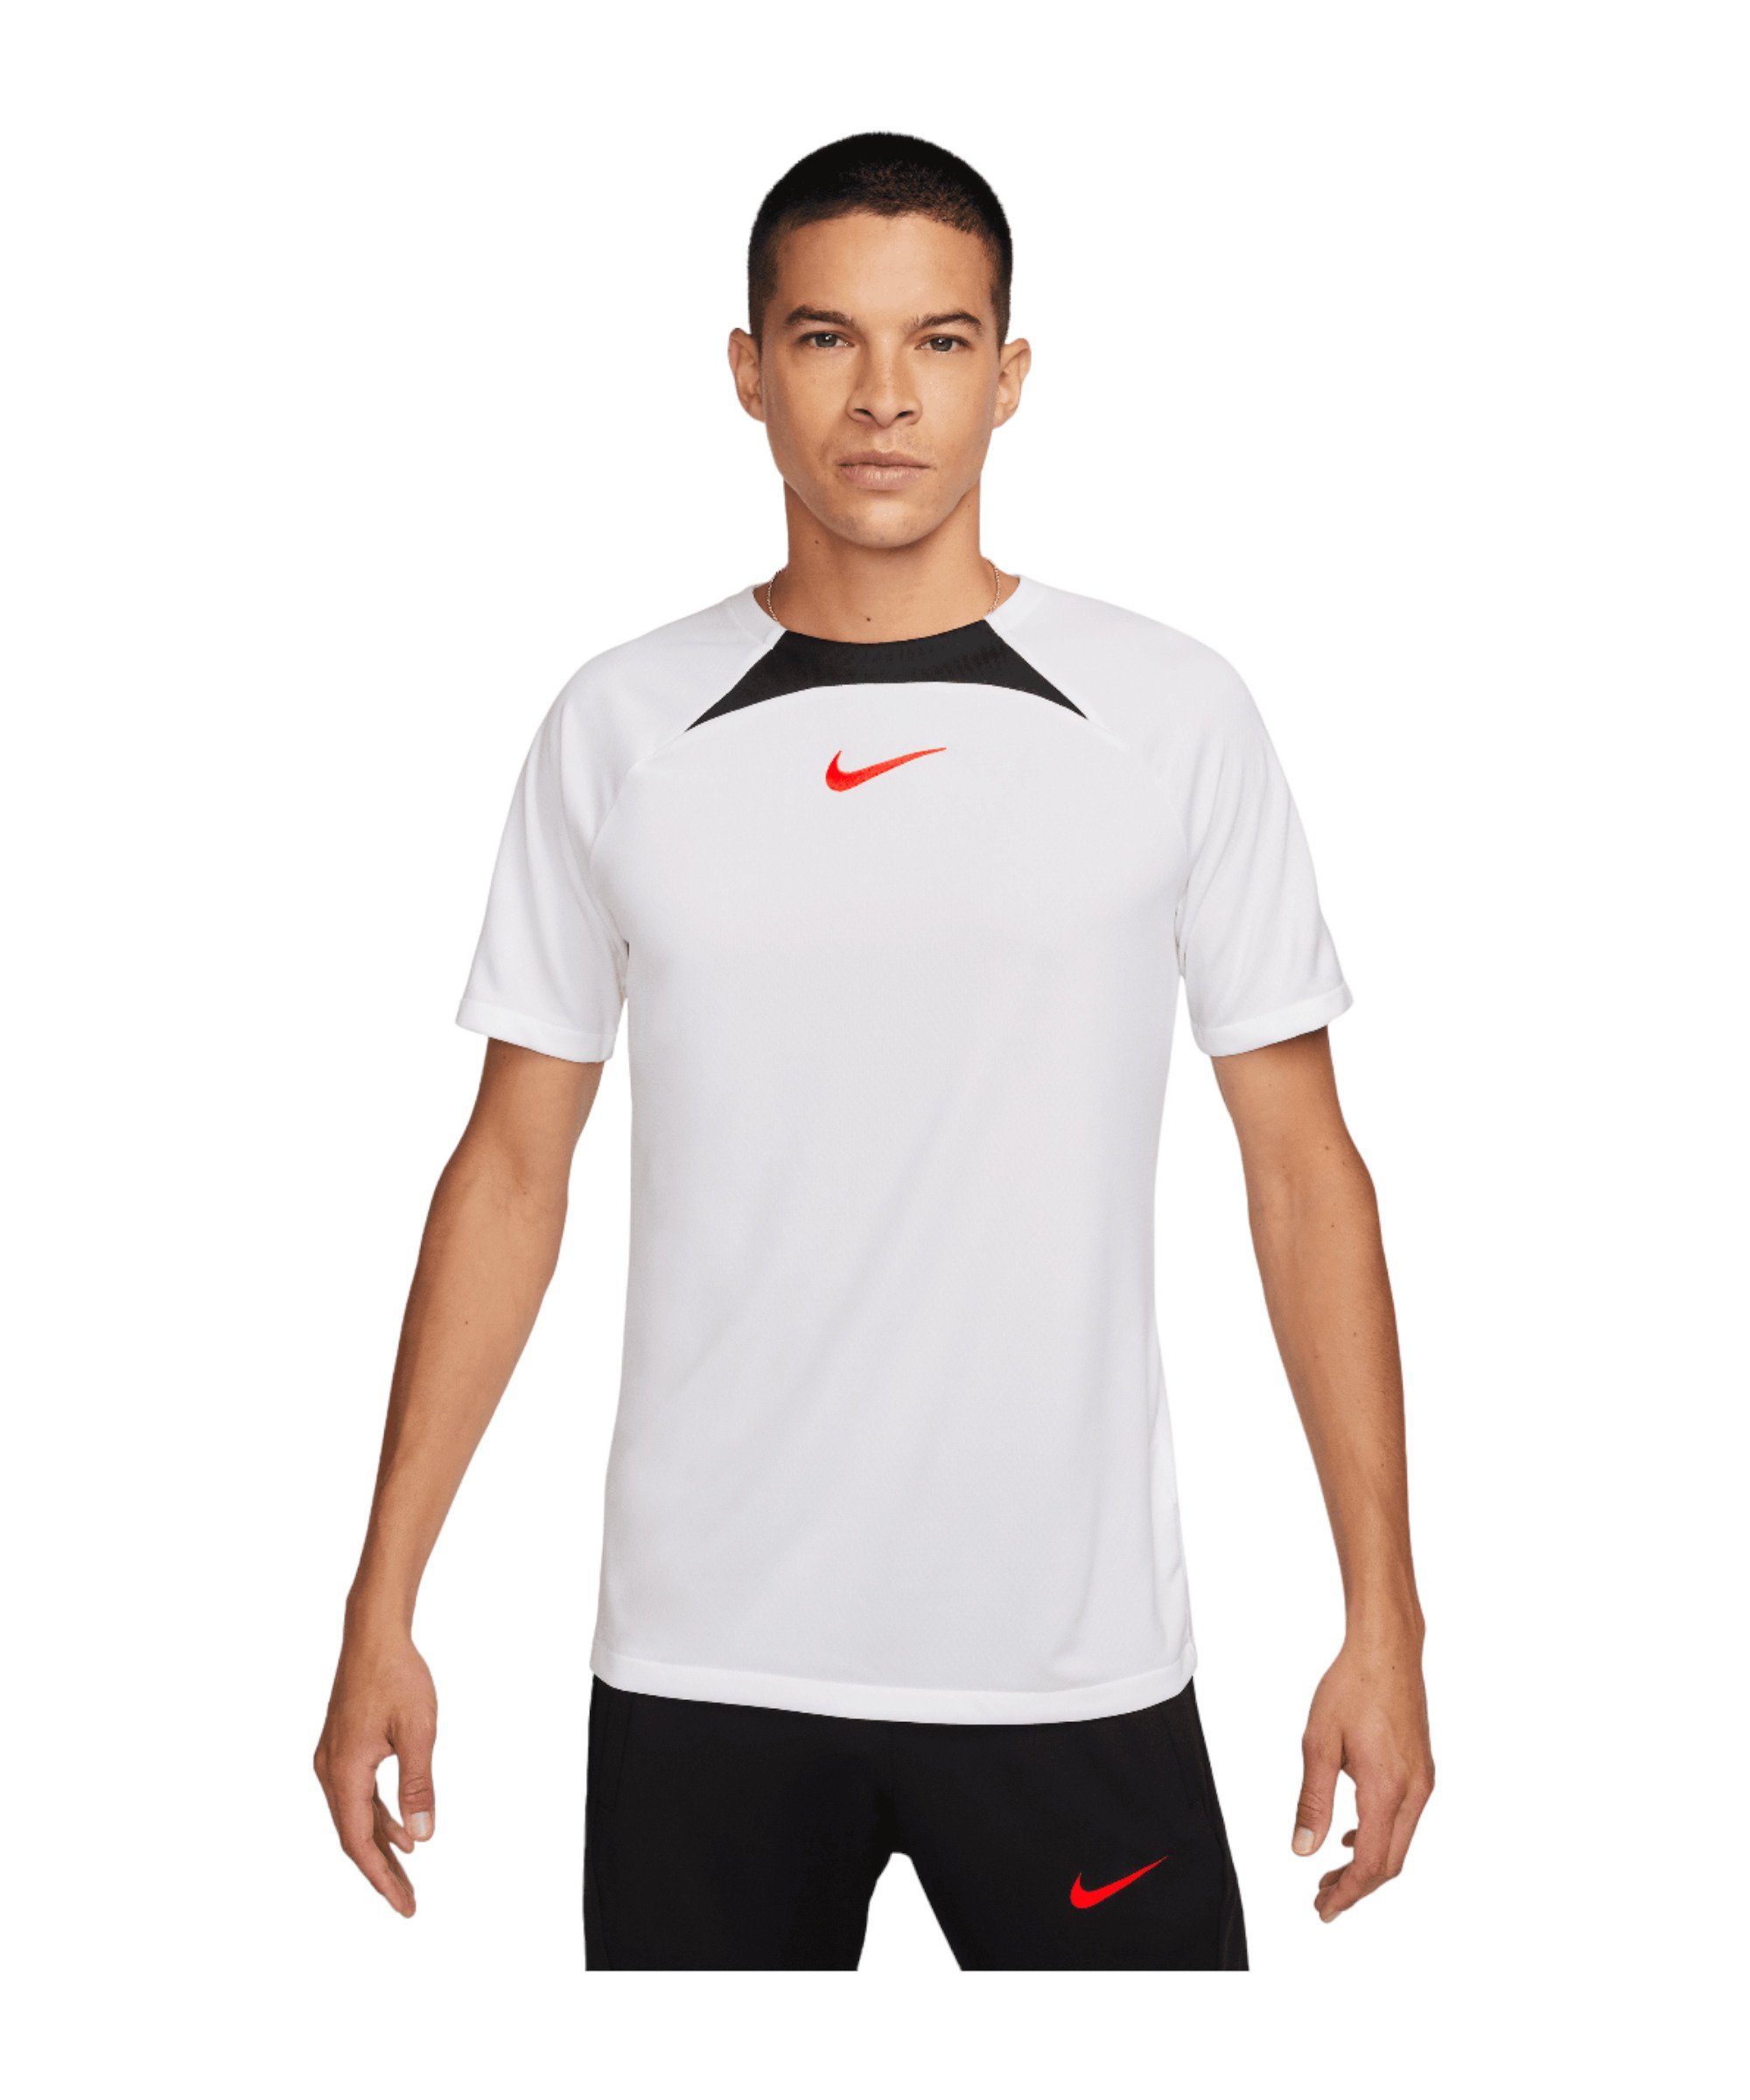 Nike default Academy T-Shirt T-Shirt weissschwarzrot